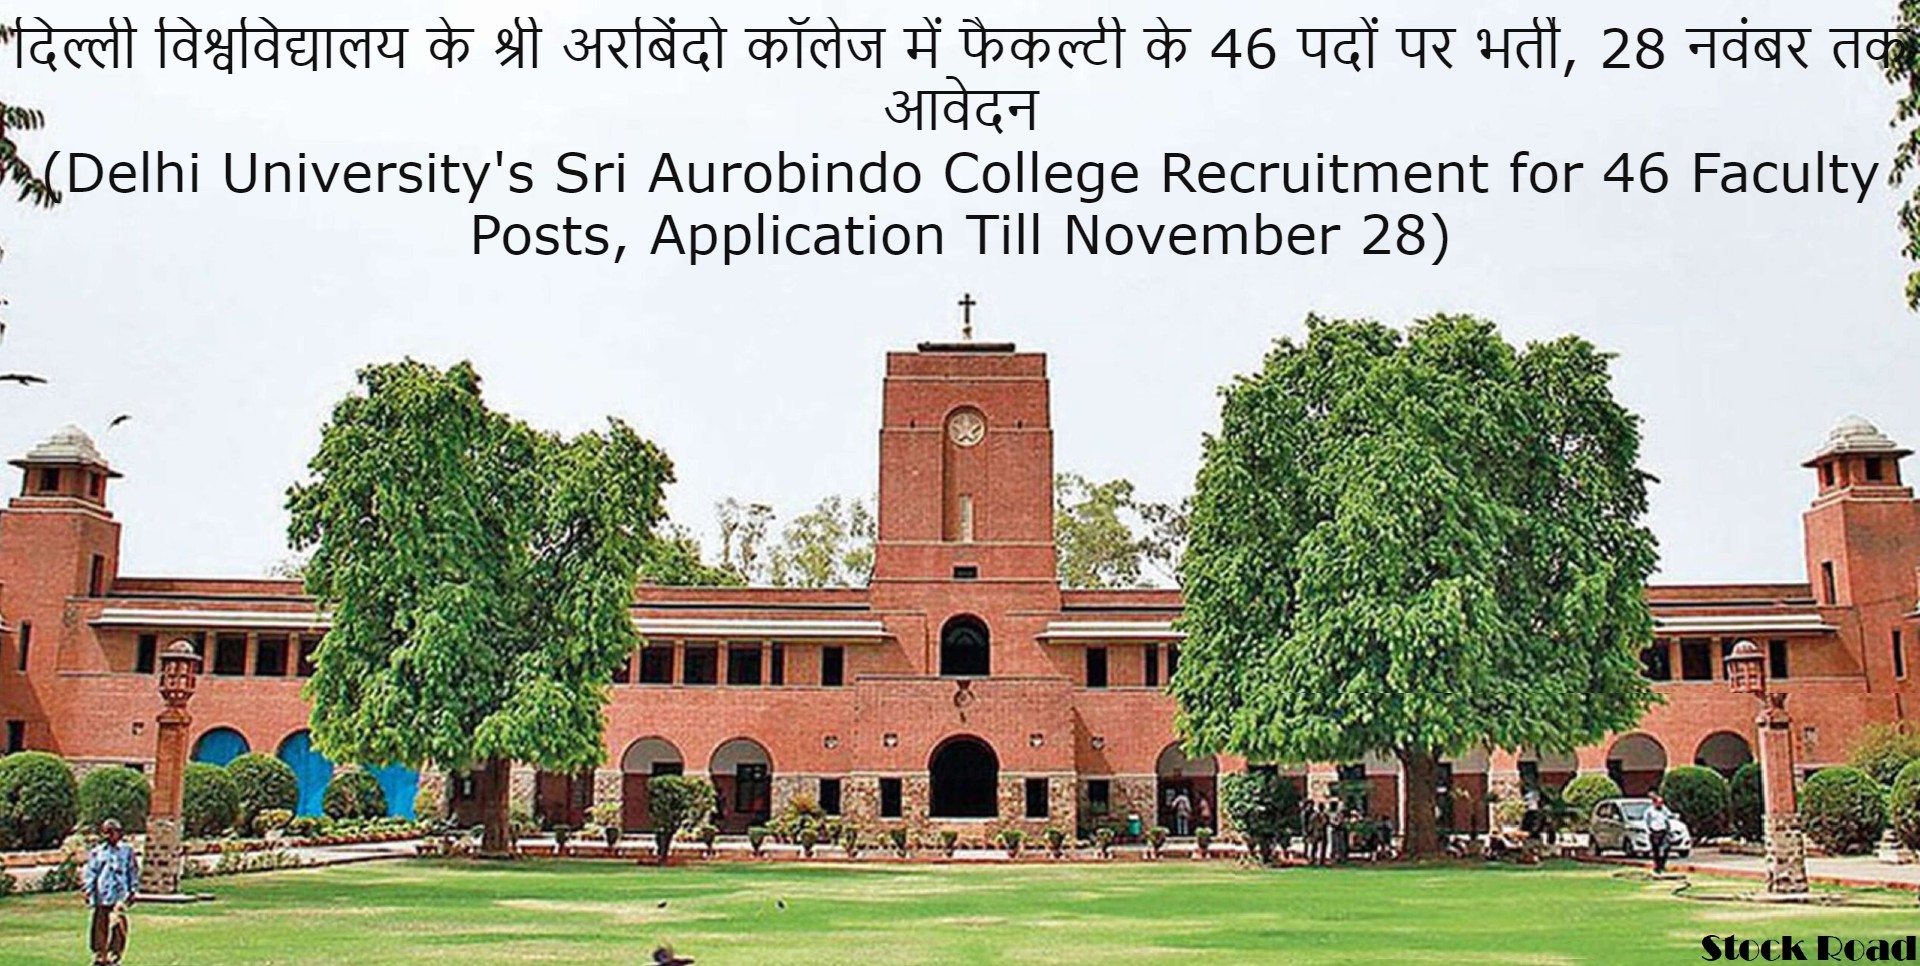 दिल्ली विश्वविद्यालय के श्री अरबिंदो कॉलेज में फैकल्टी के 46 पदों पर भर्ती, 28 नवंबर तक आवेदन (Delhi University's Sri Aurobindo College Recruitment for 46 Faculty Posts, Application Till November 28)